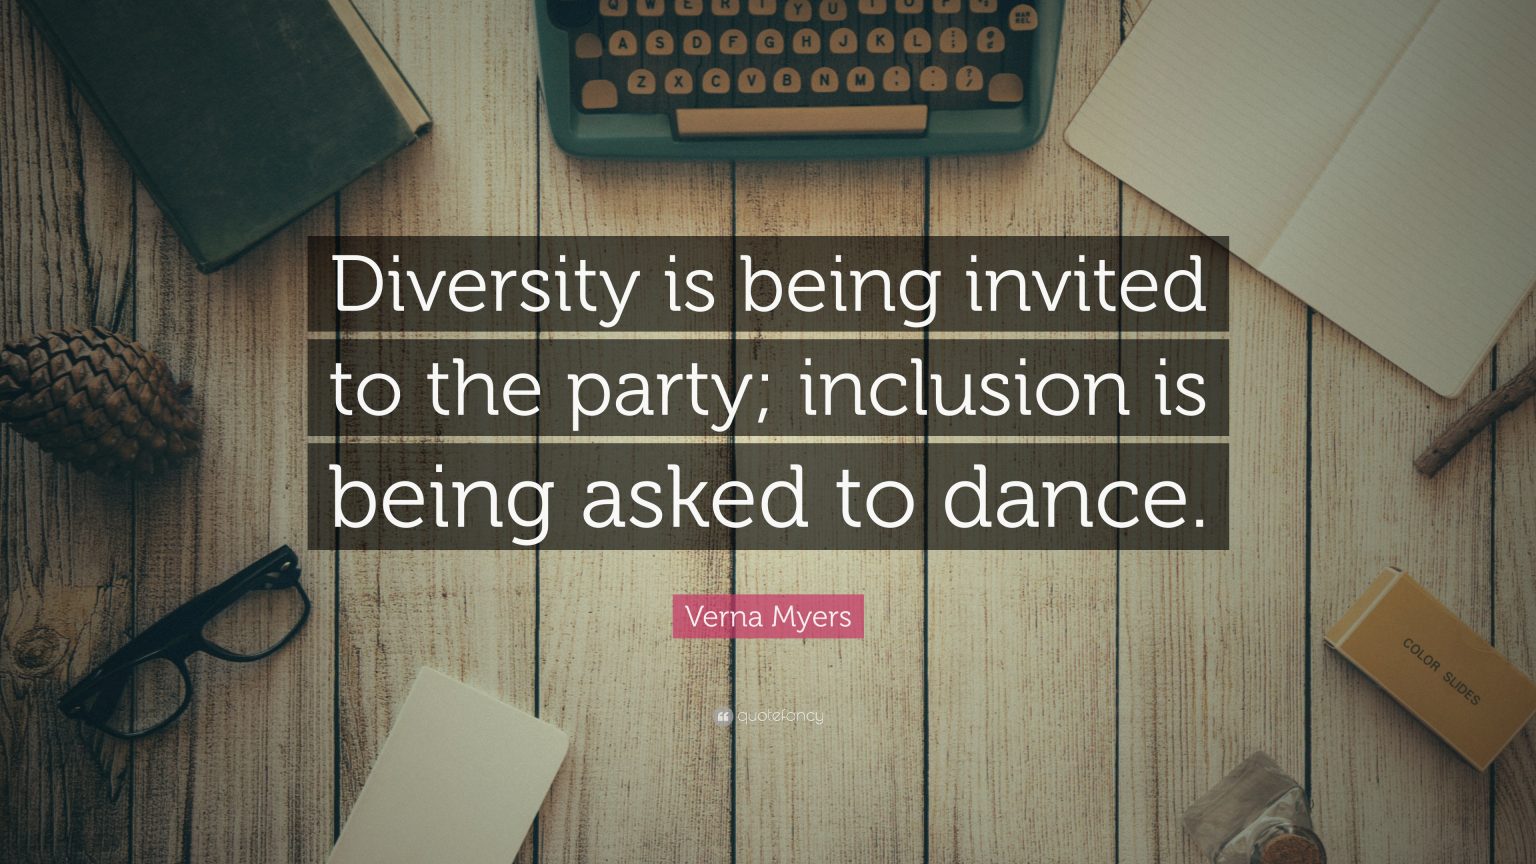 Las claves del Diversity & Inclusion Day: cómo seguir avanzando en DEI en las empresas 